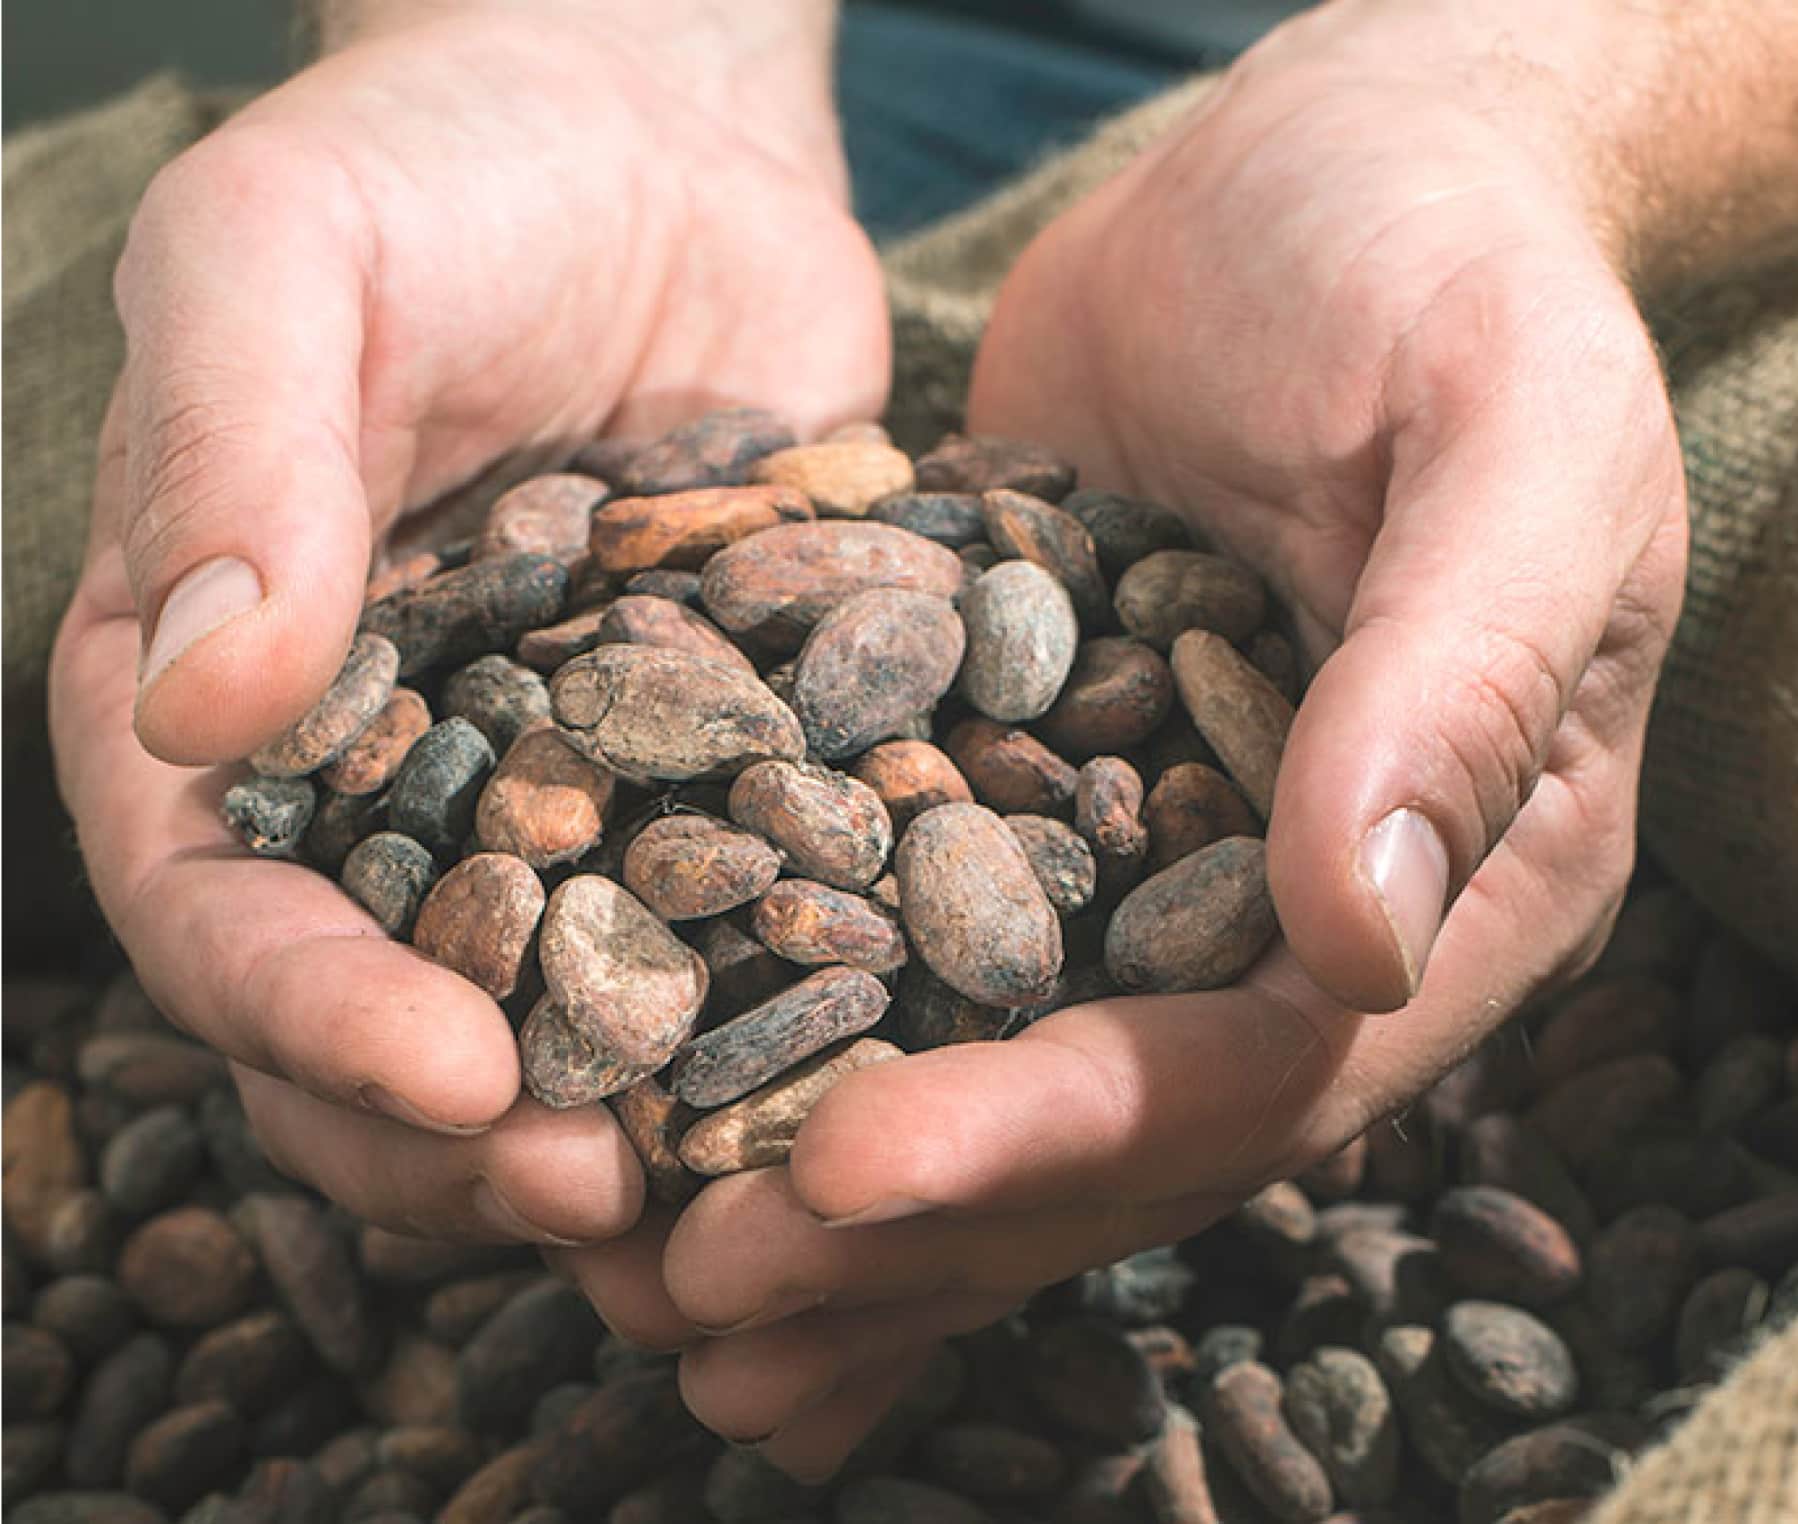 Des grains de cacao dans les mains d'une personne